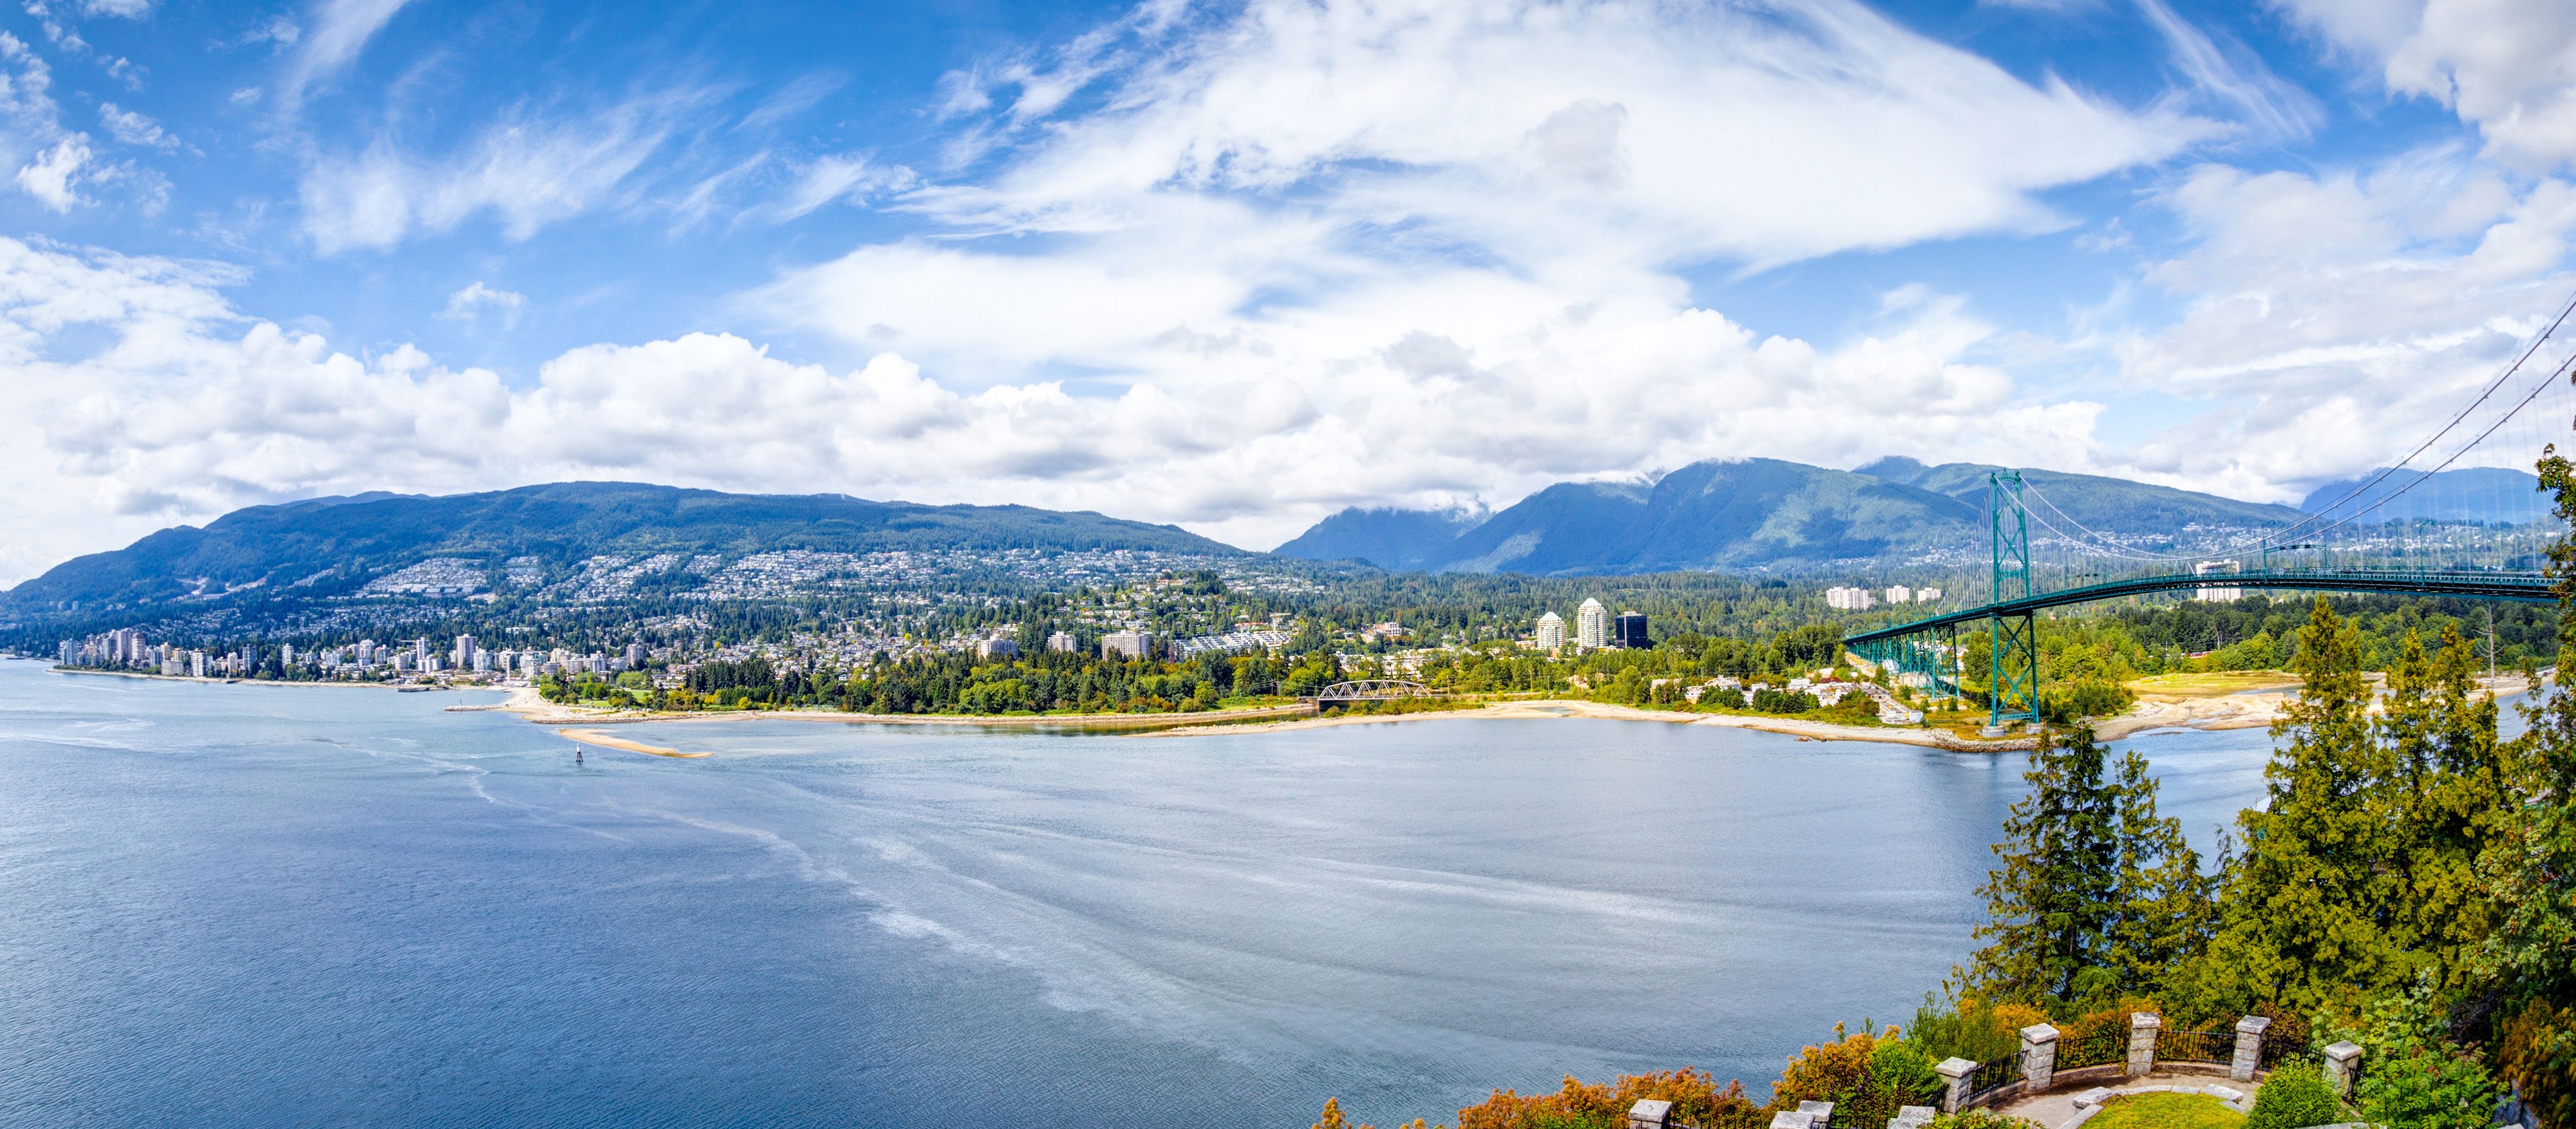 Panoramaaufnahme West Vancouver mit der Lions Gate Bridge